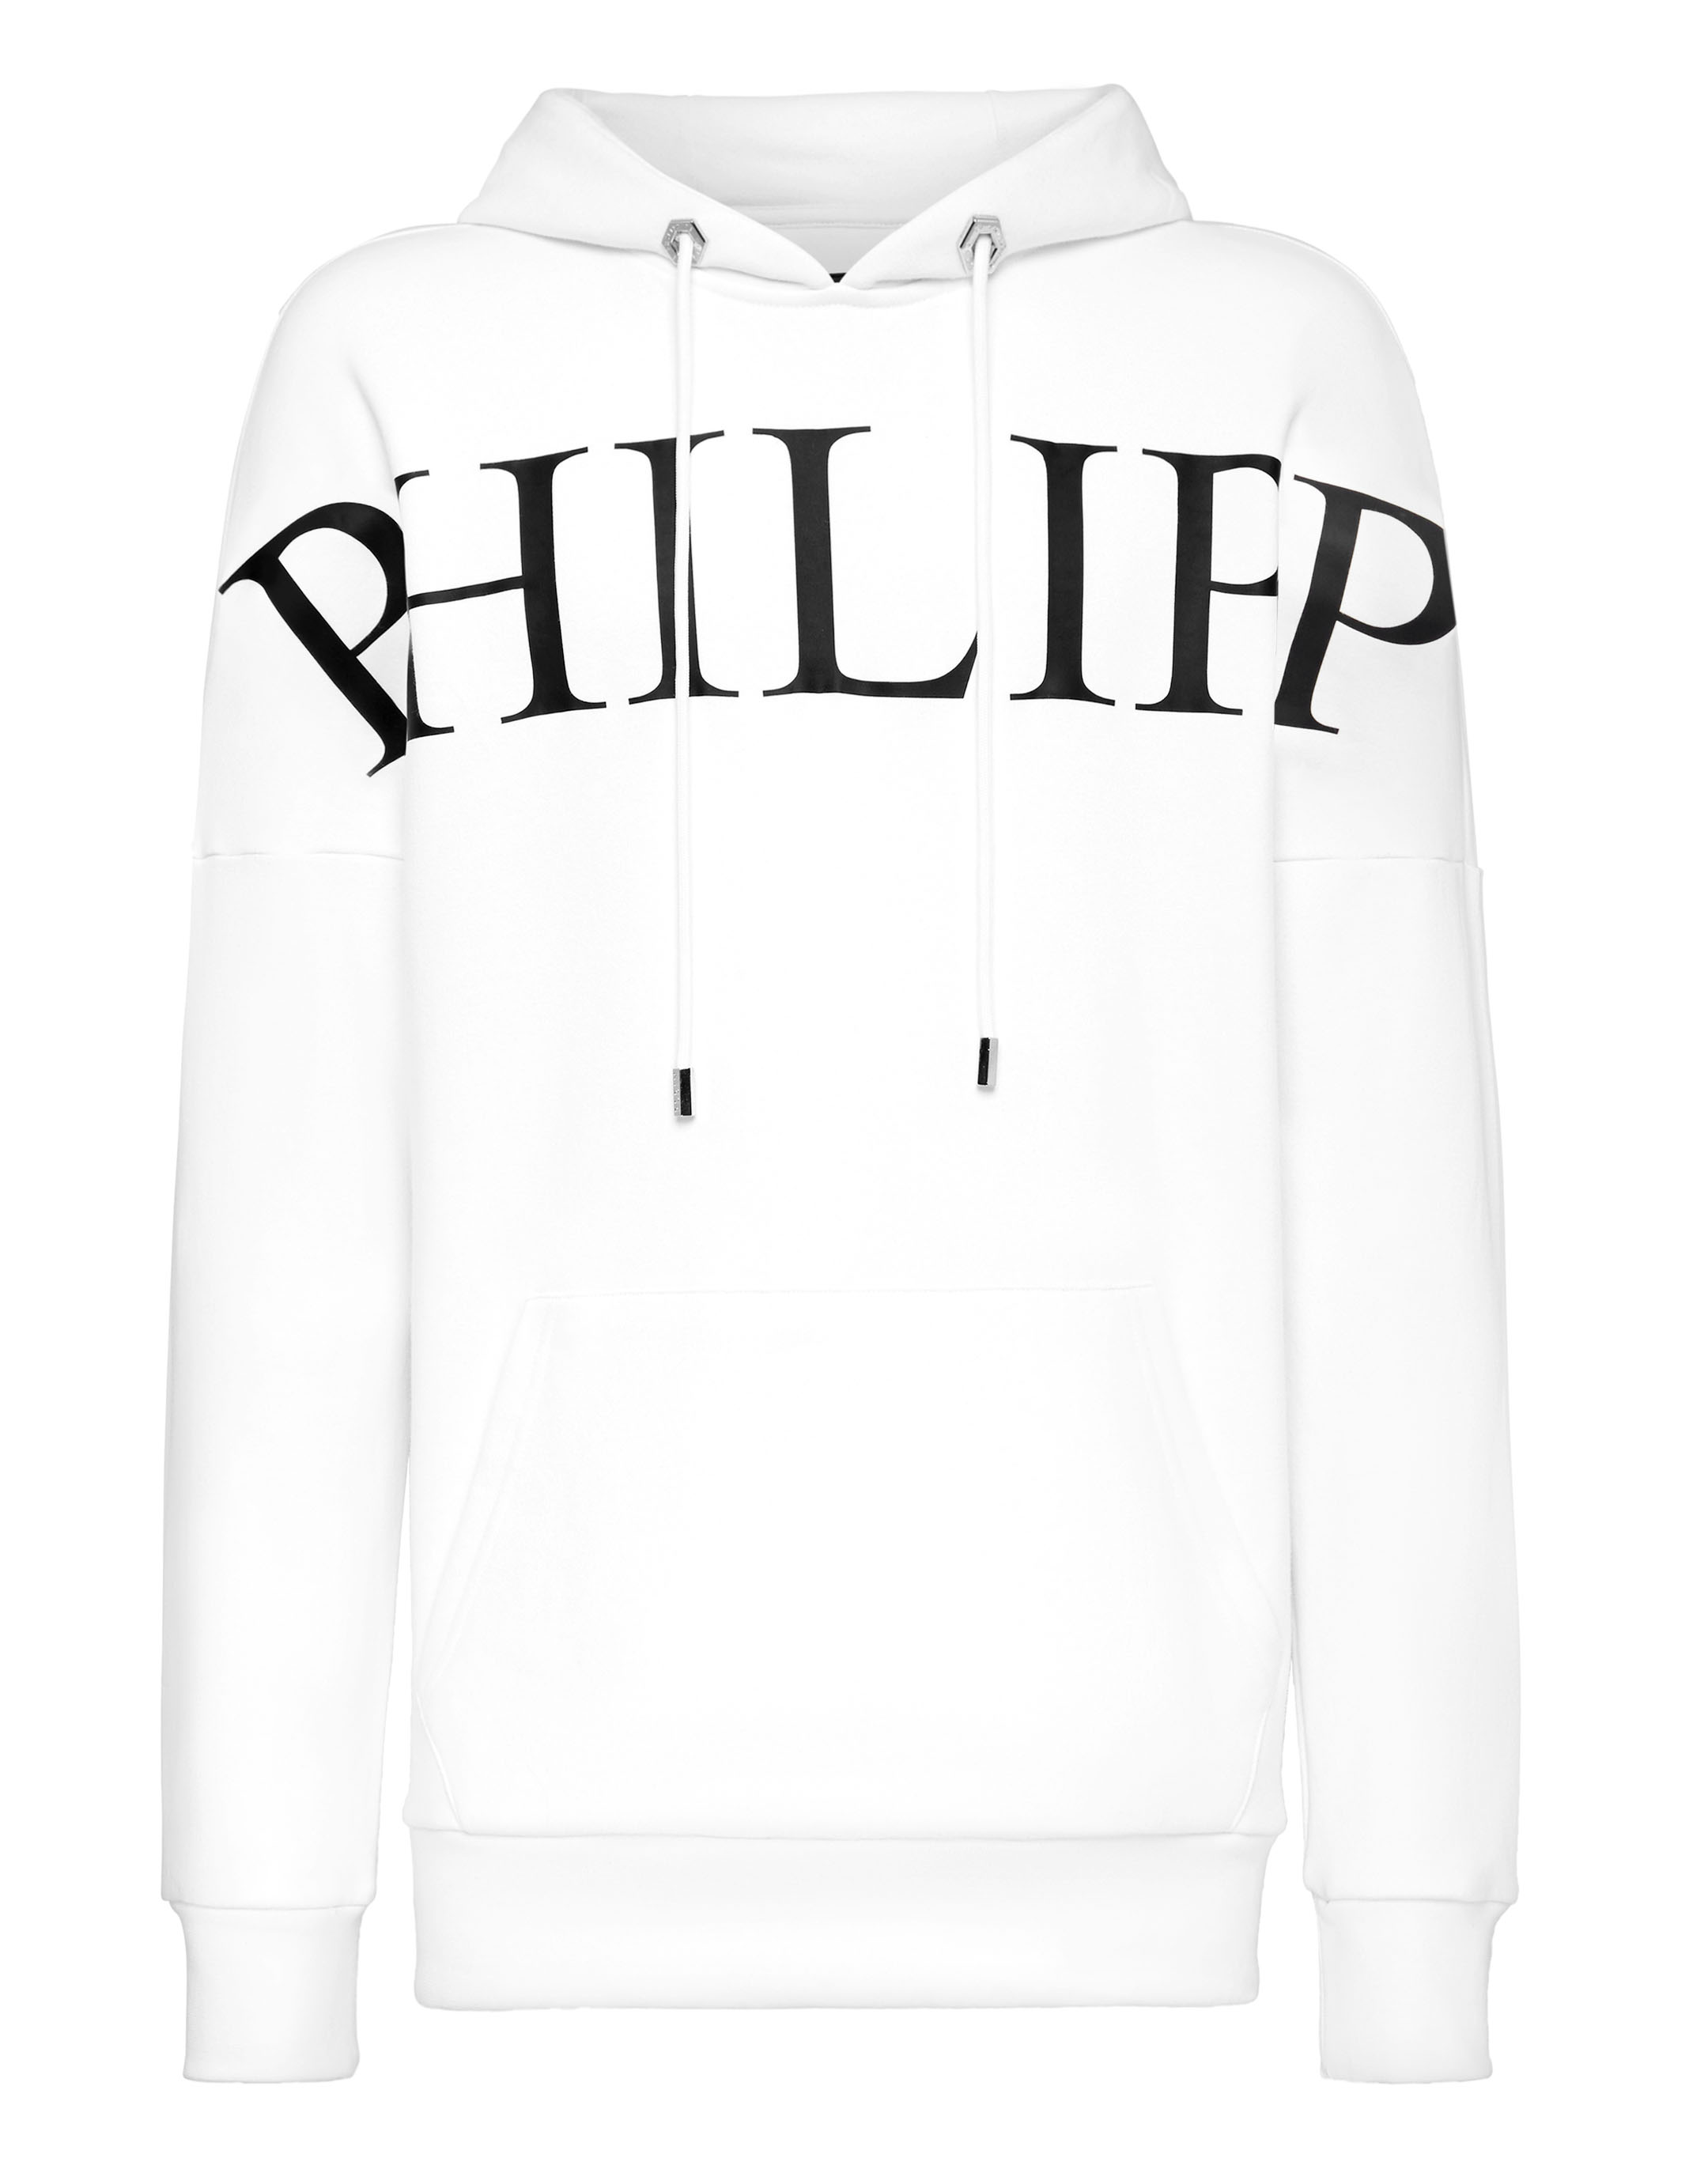 Hoodie sweatshirt Philipp Plein TM | Philipp Plein Outlet